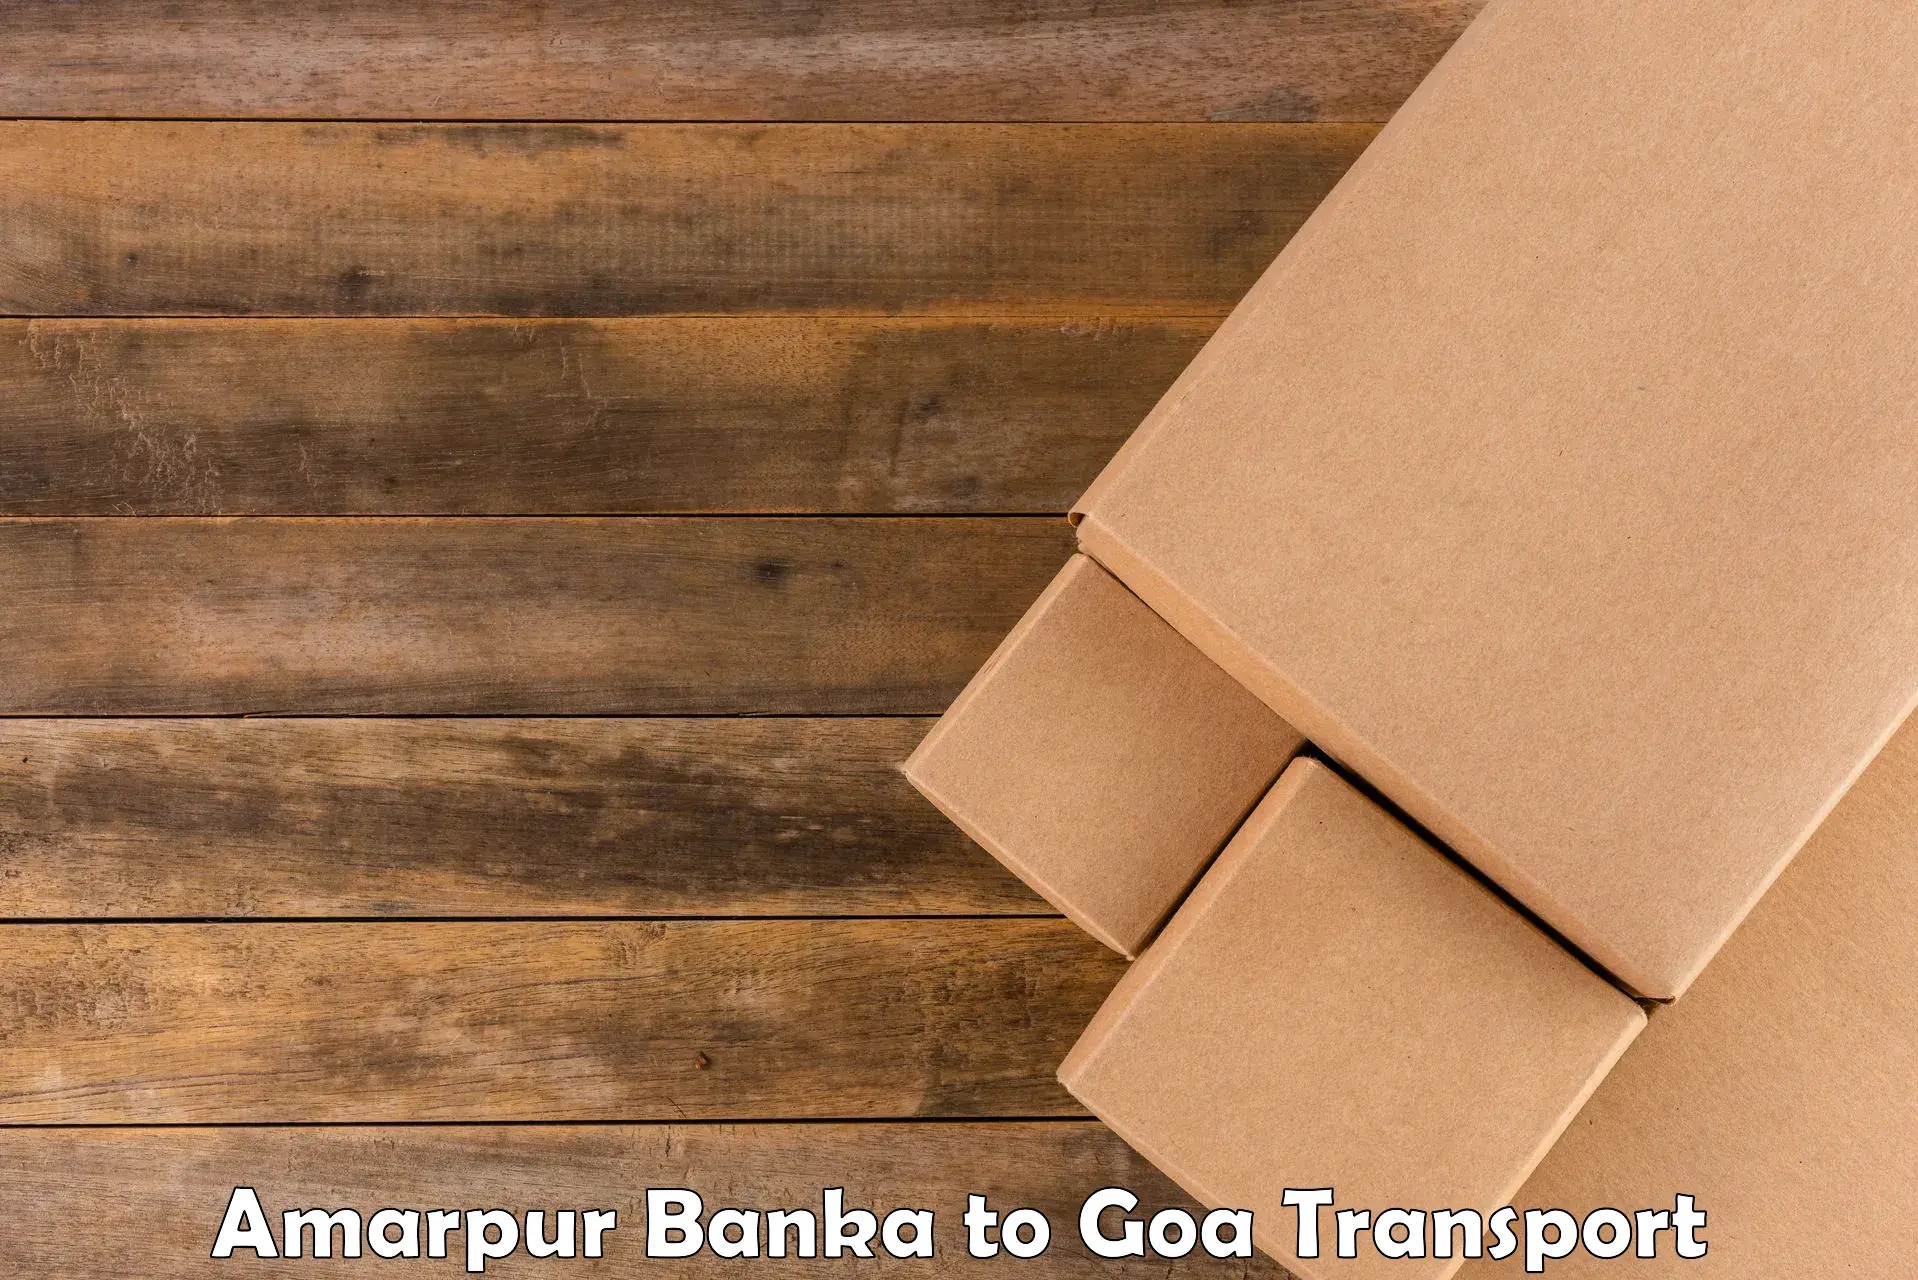 Cargo transport services Amarpur Banka to Mormugao Port